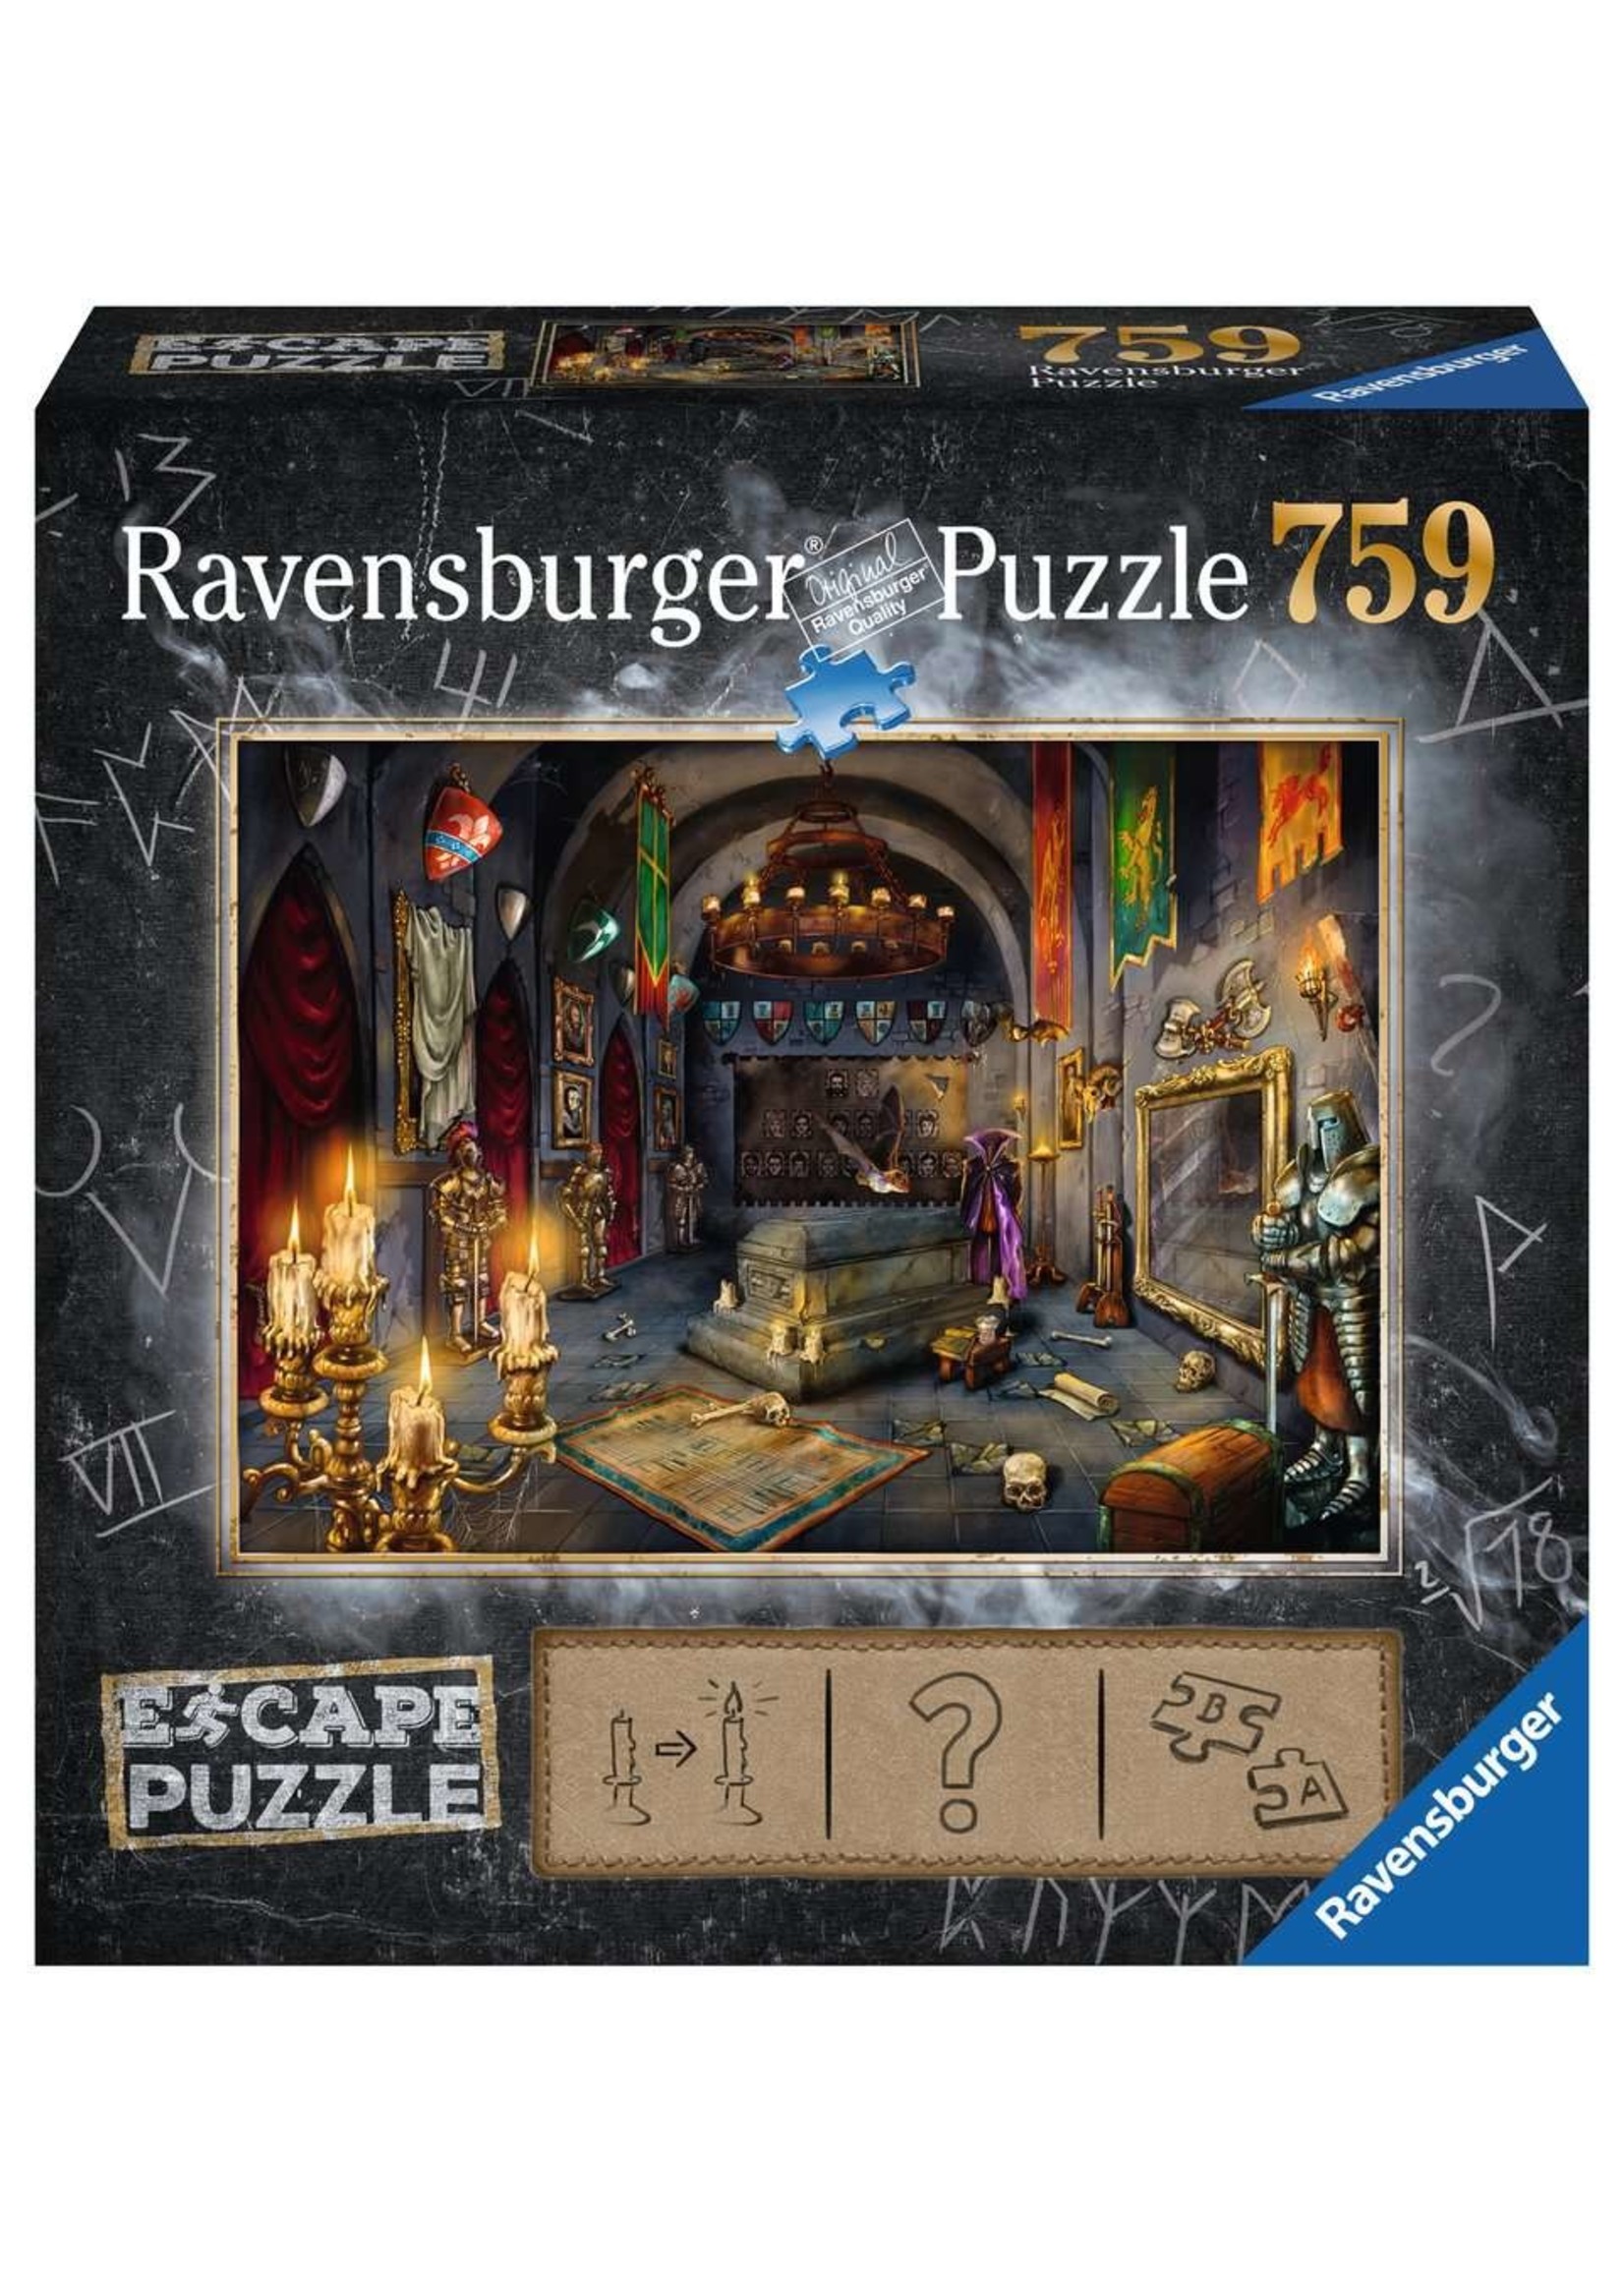 Ravensburger Vampire's Castle - 759 Piece Escape Puzzle